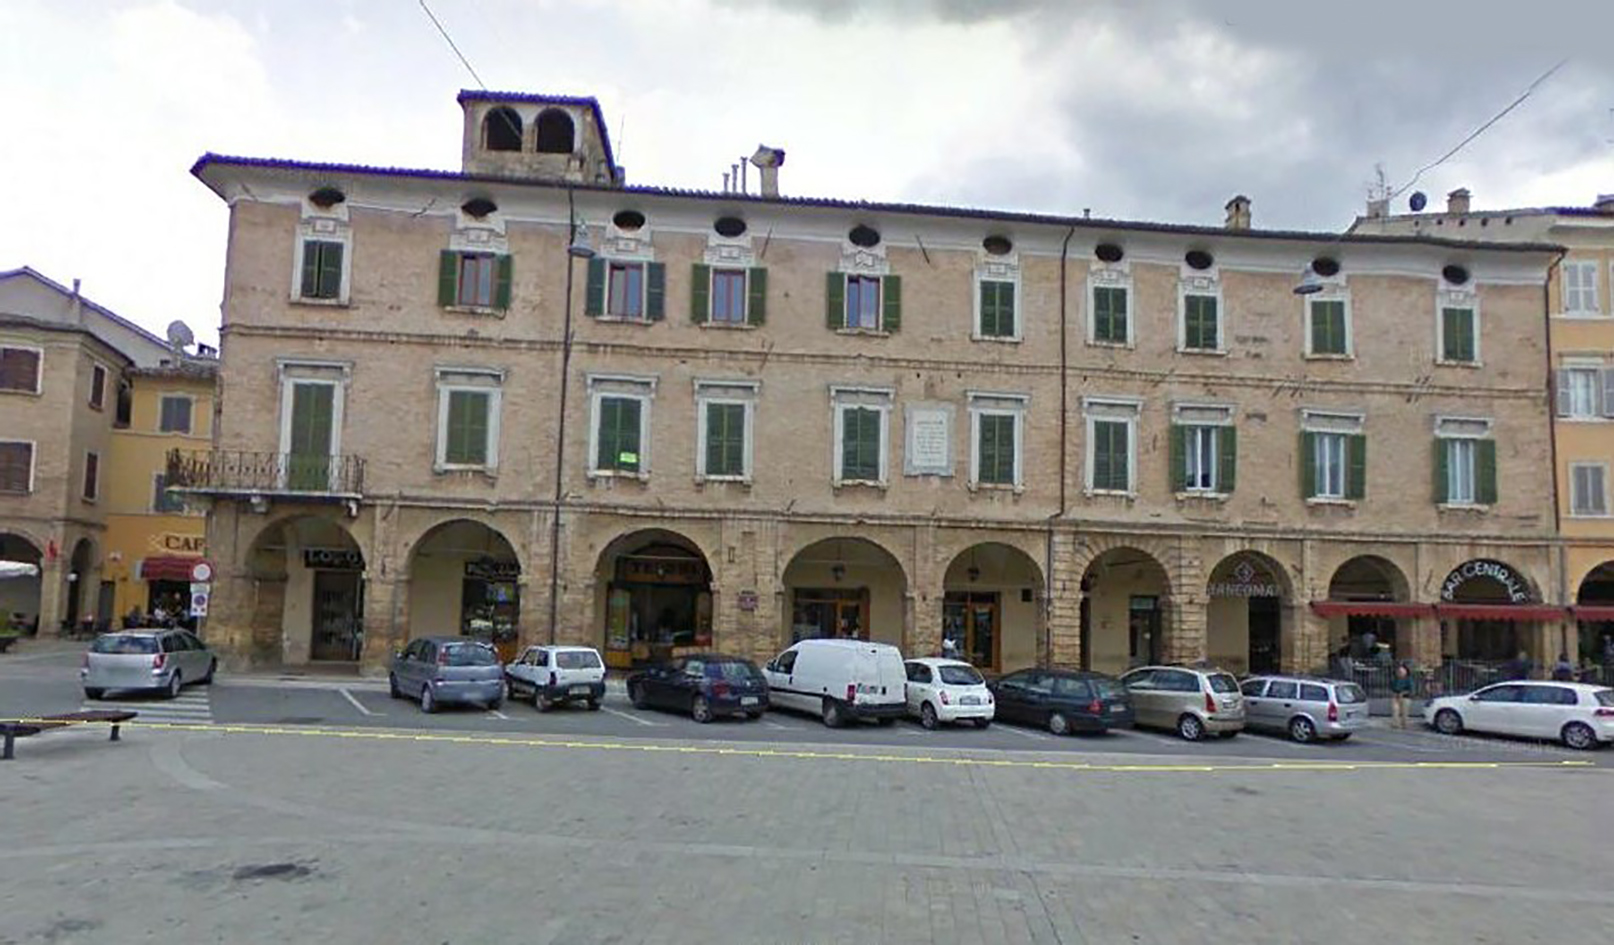 Palazzo Valentini (palazzo, signorile) - San Severino Marche (MC) 